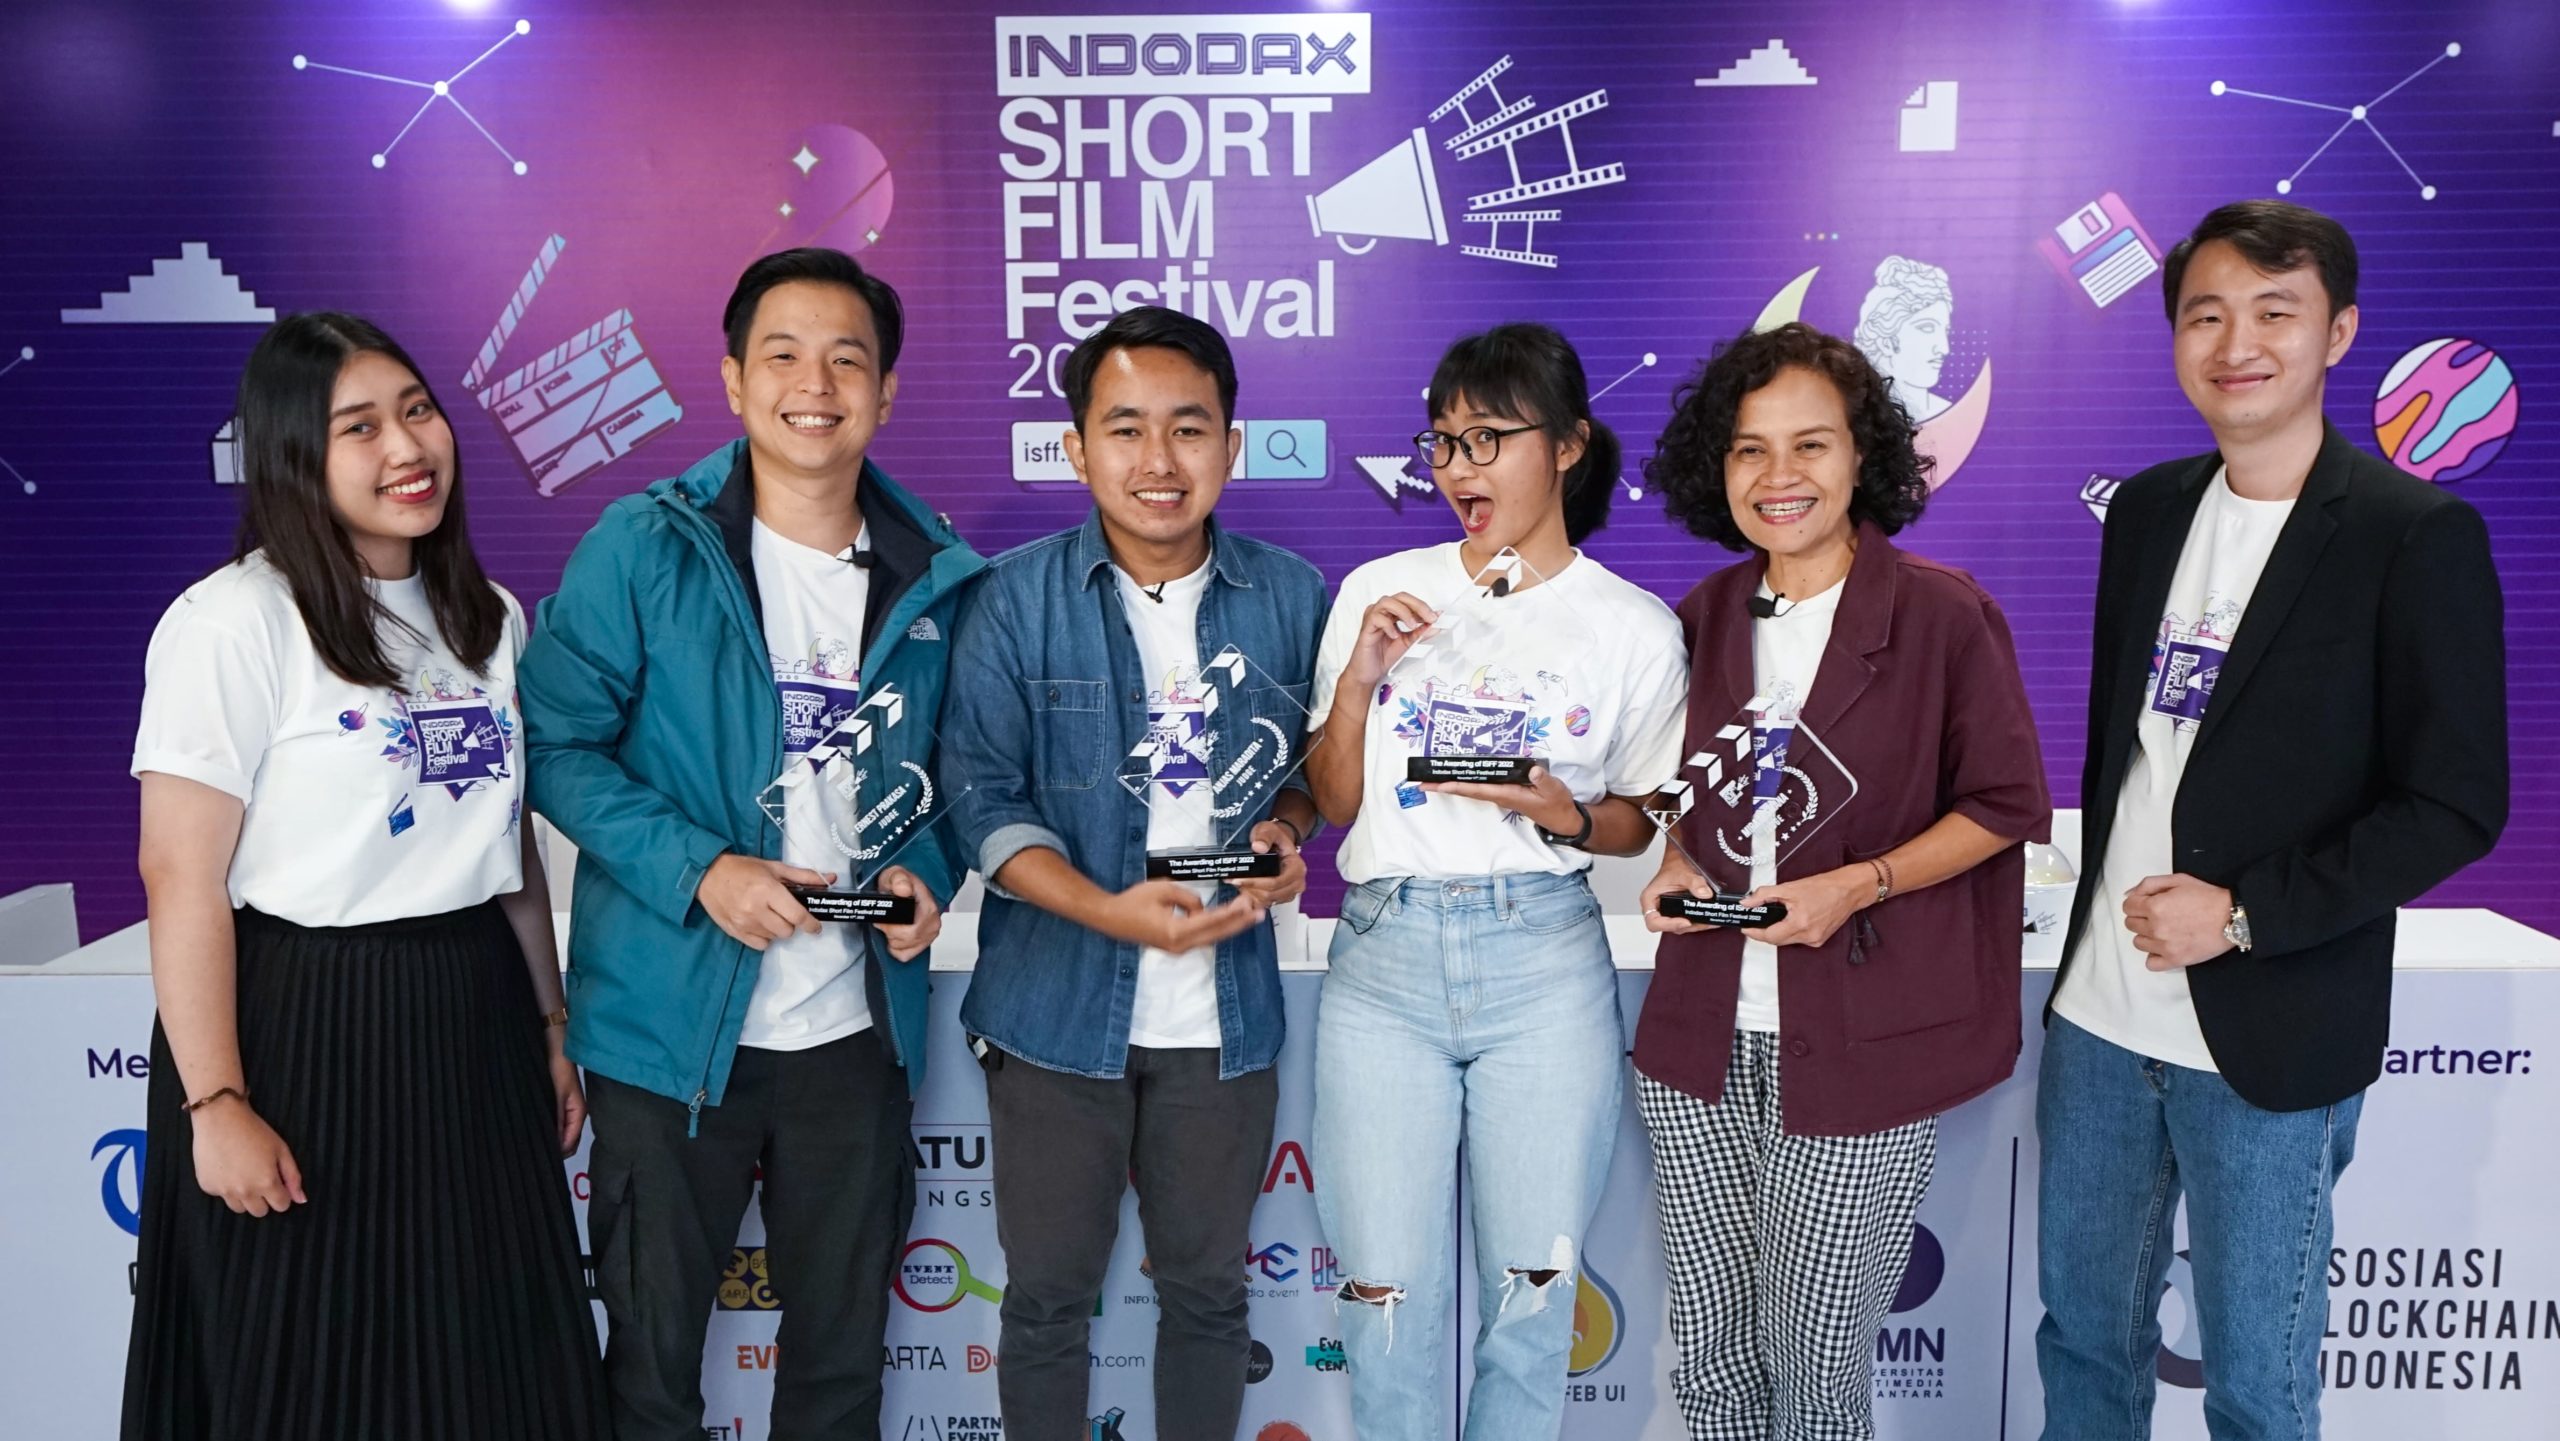 Indodax Short Film Festival